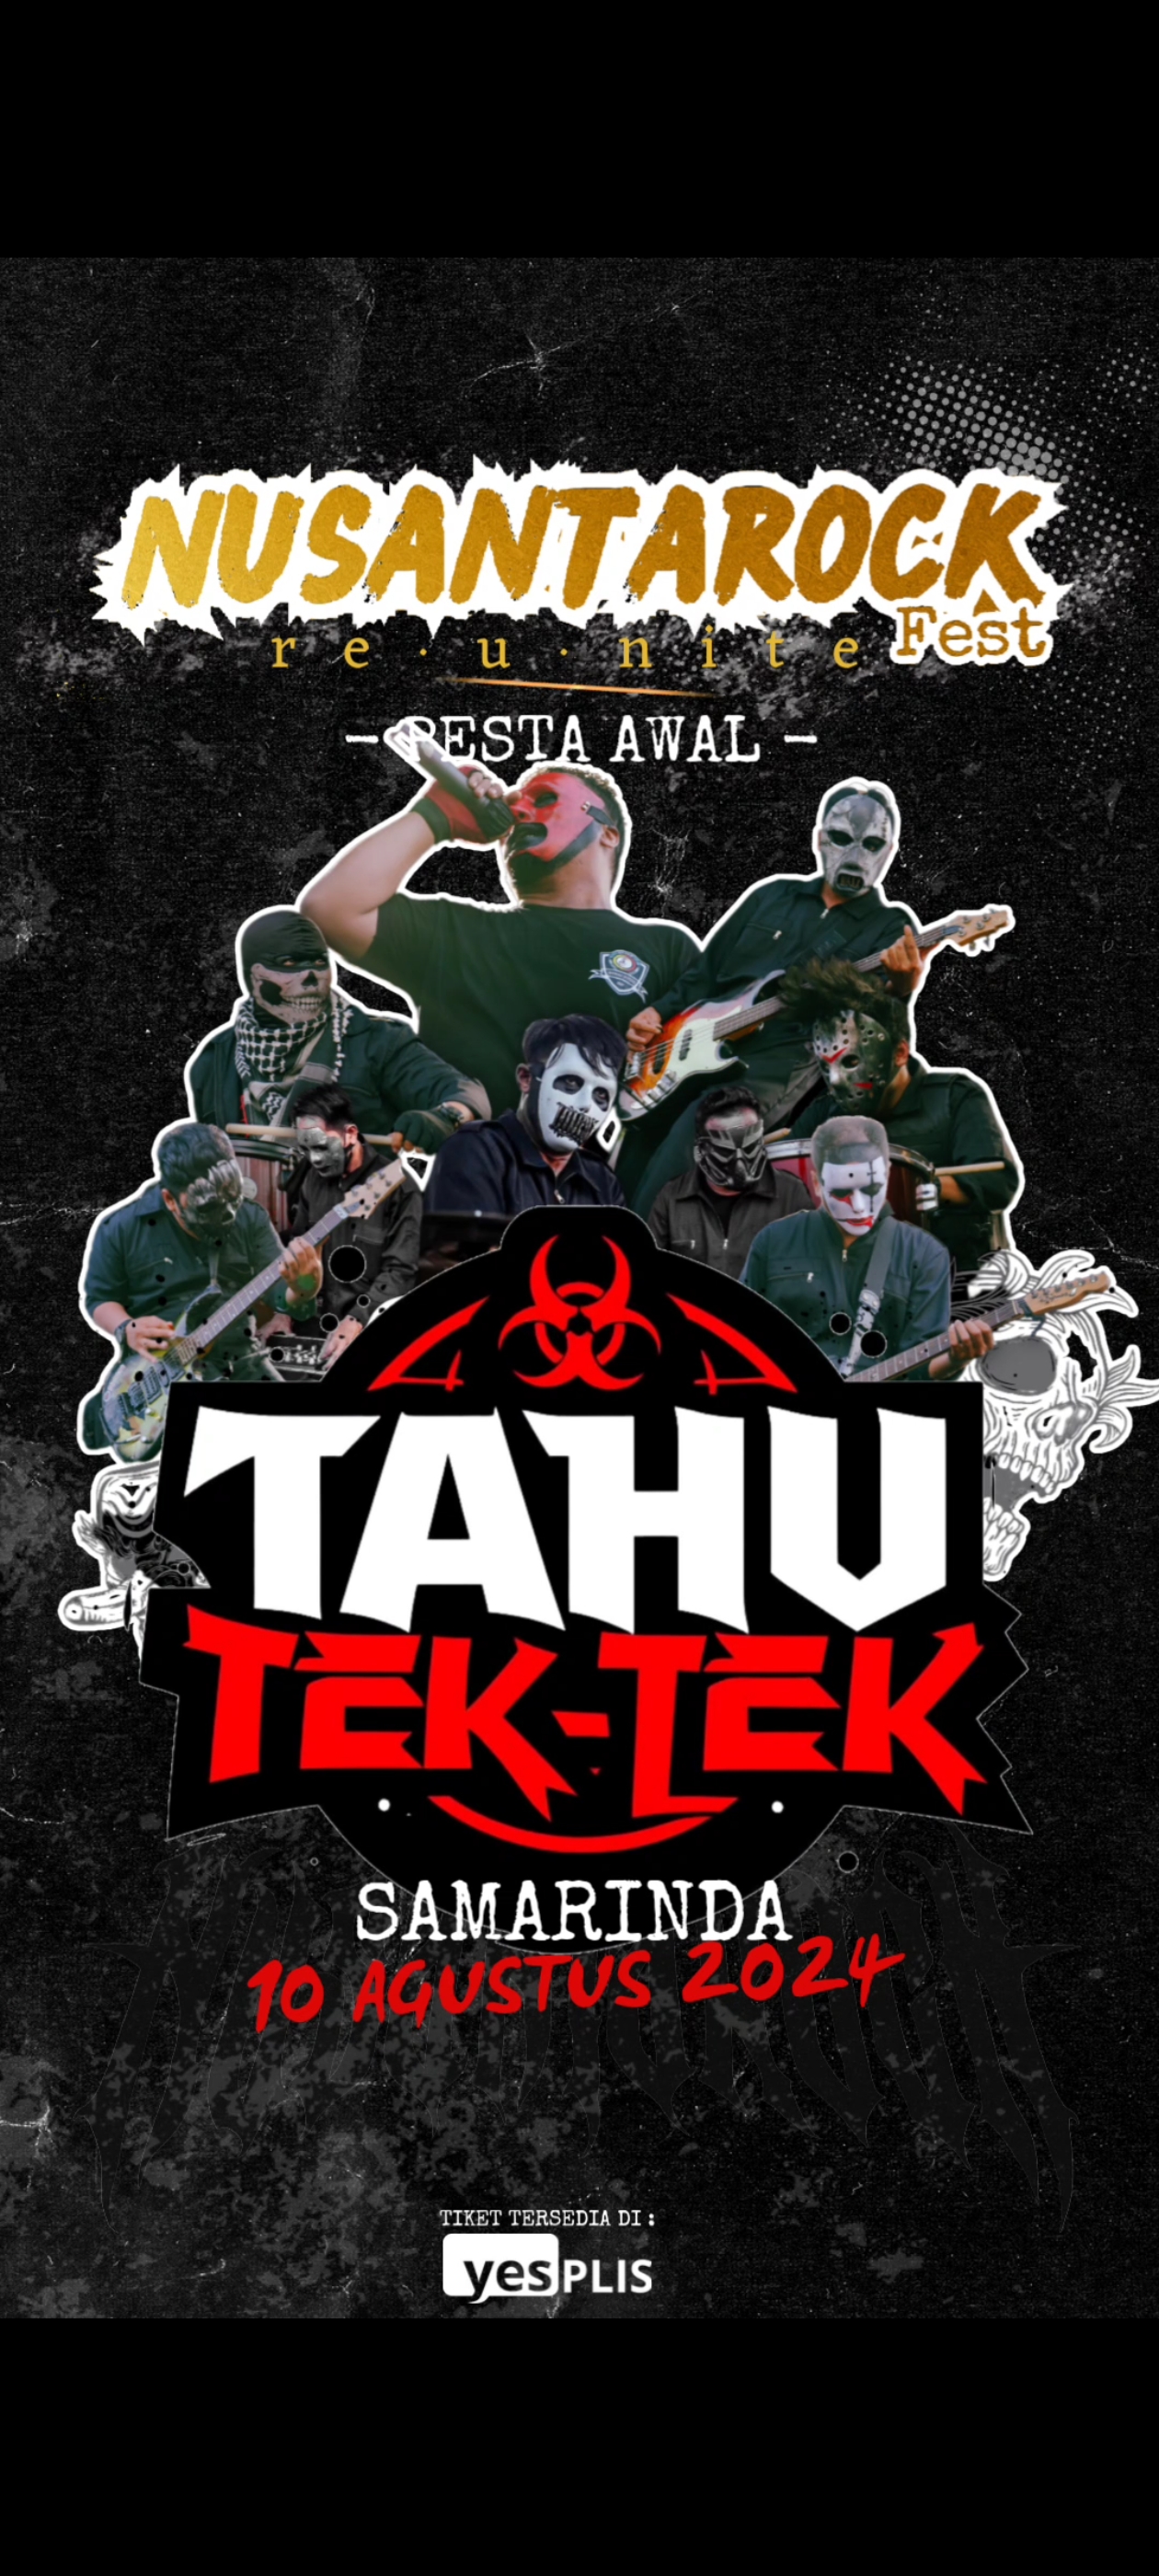 TAHU TEK-TEK METAL